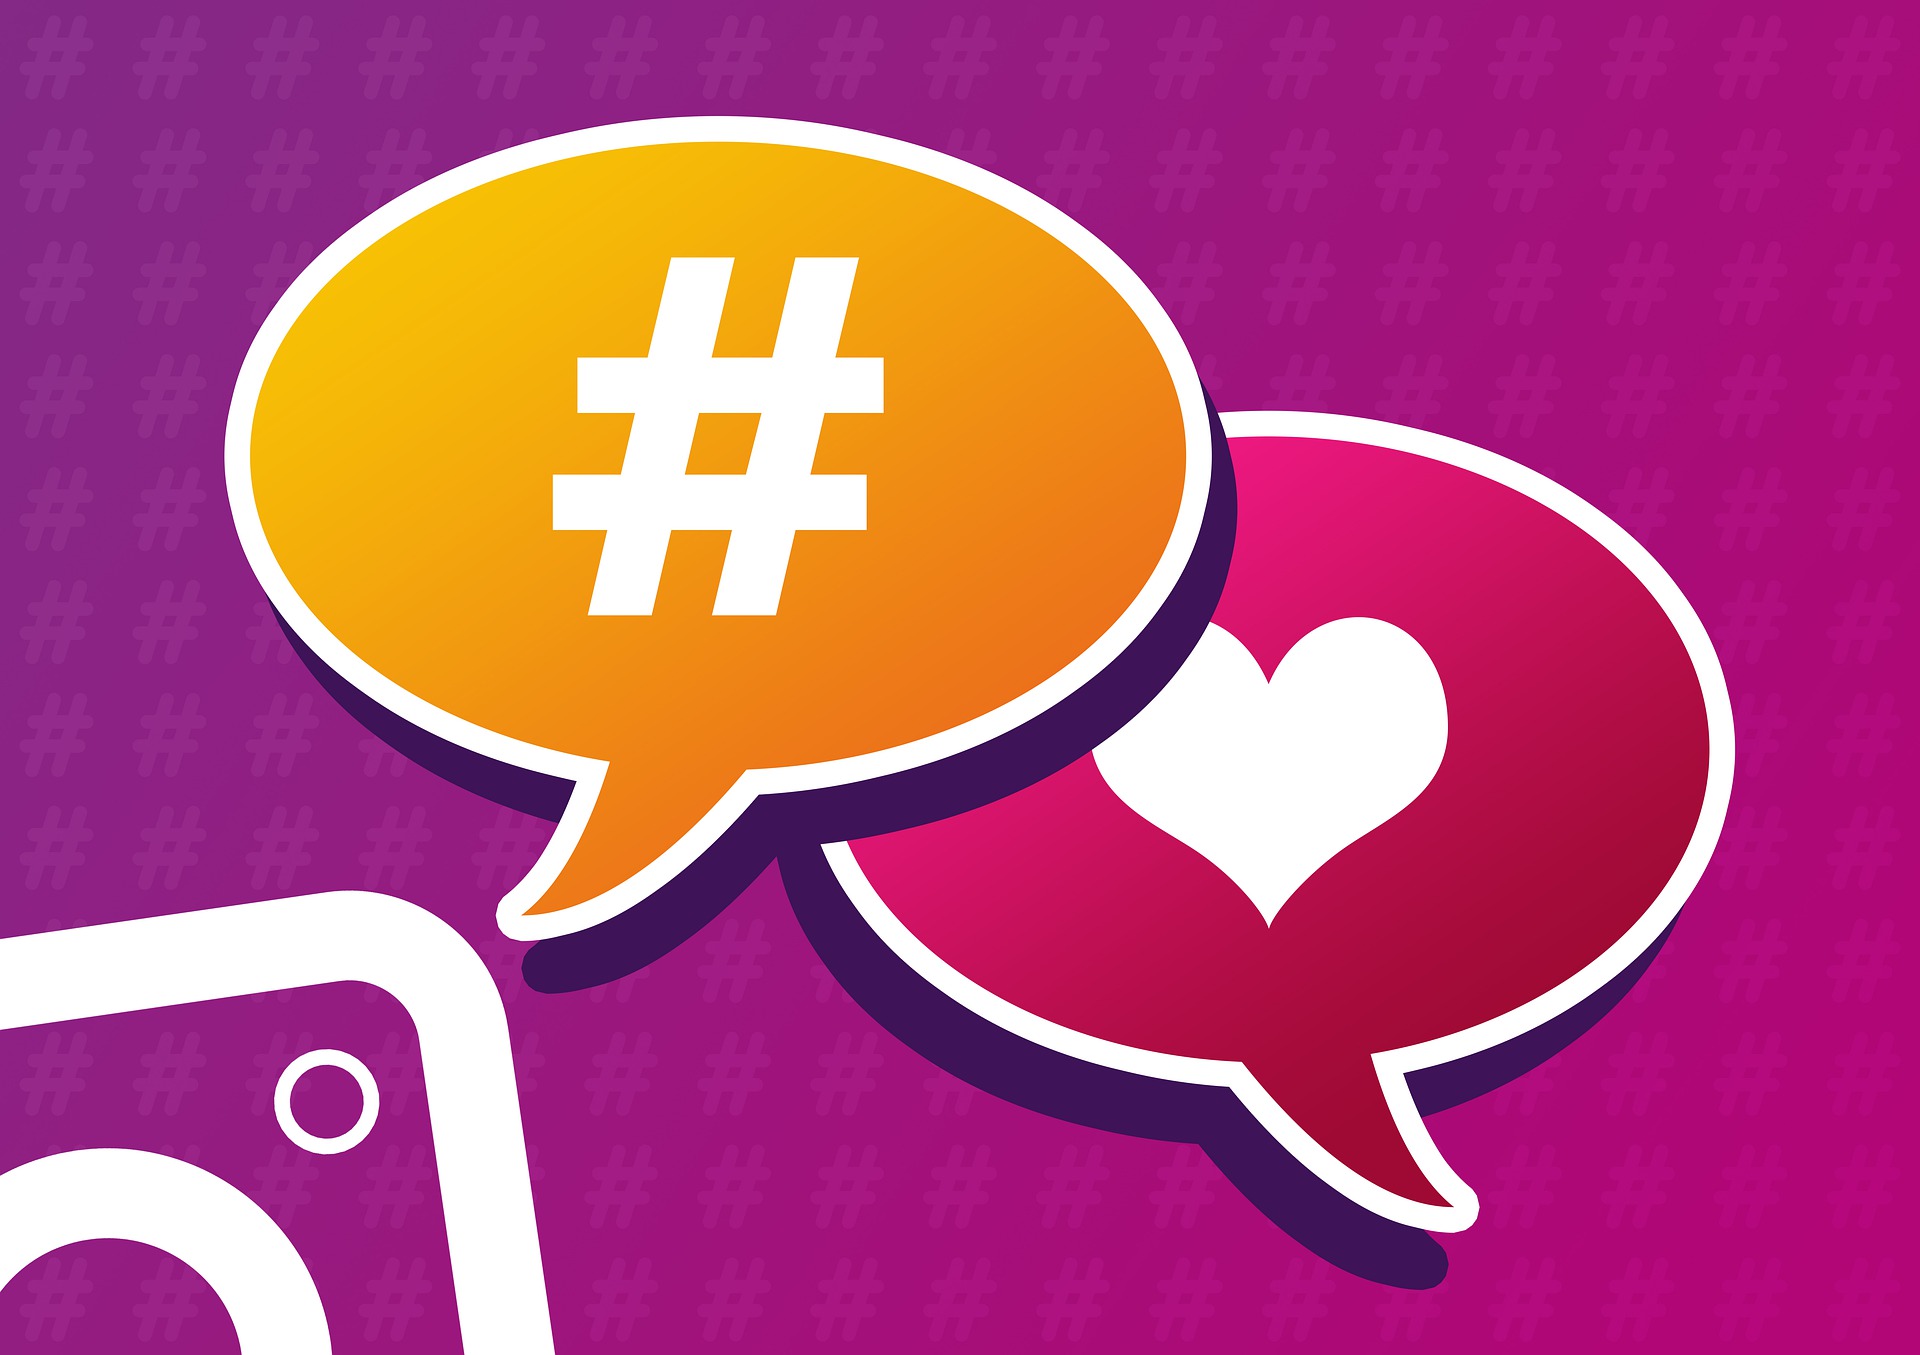 Sprechblase mit Hashtag und Herz sowie Ausschnitt des Instagram-Logos